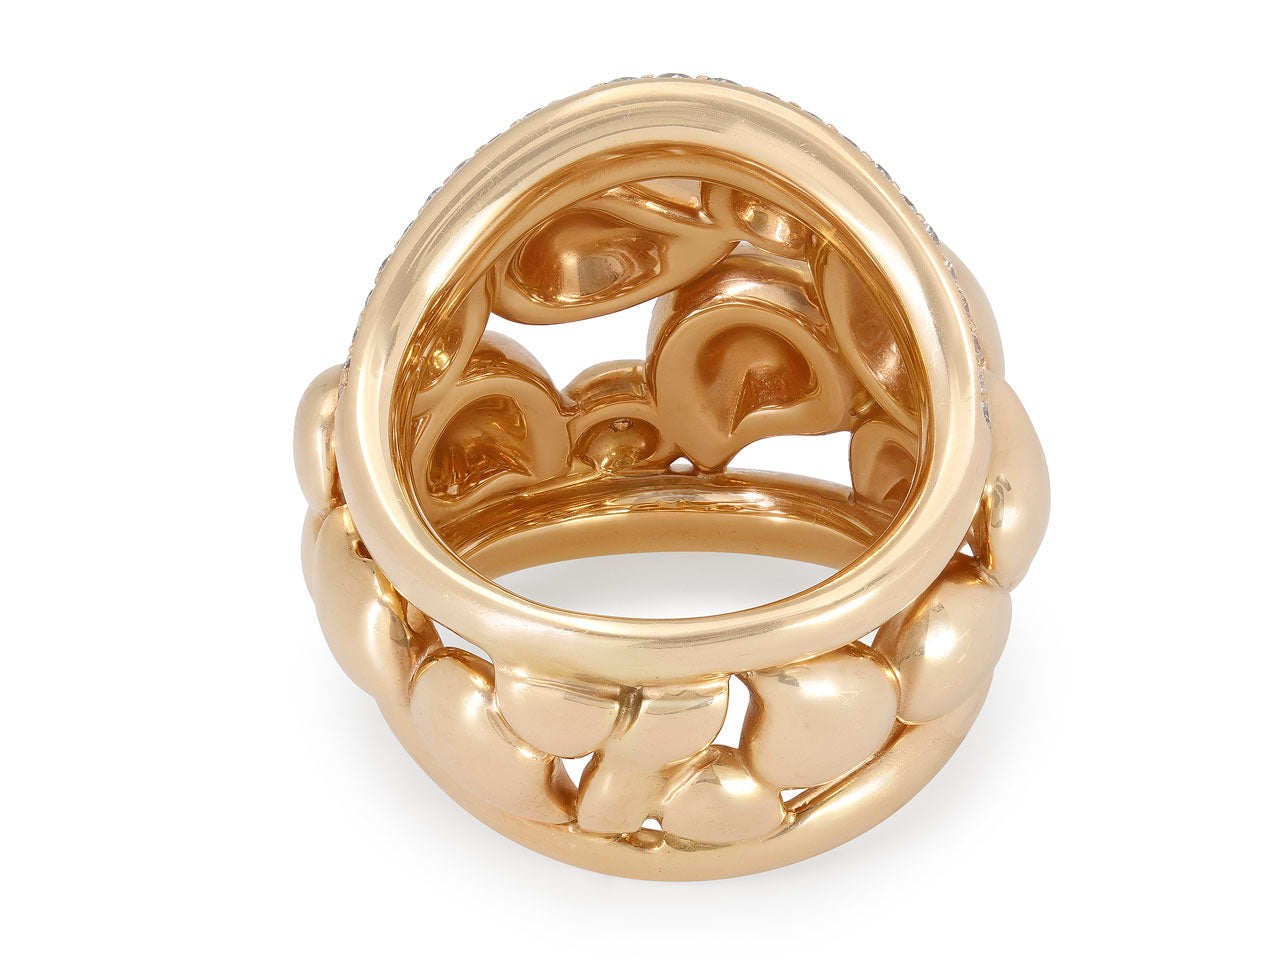 Tamara Comolli 'Signature Lace' Diamond Ring in 18K Rose Gold